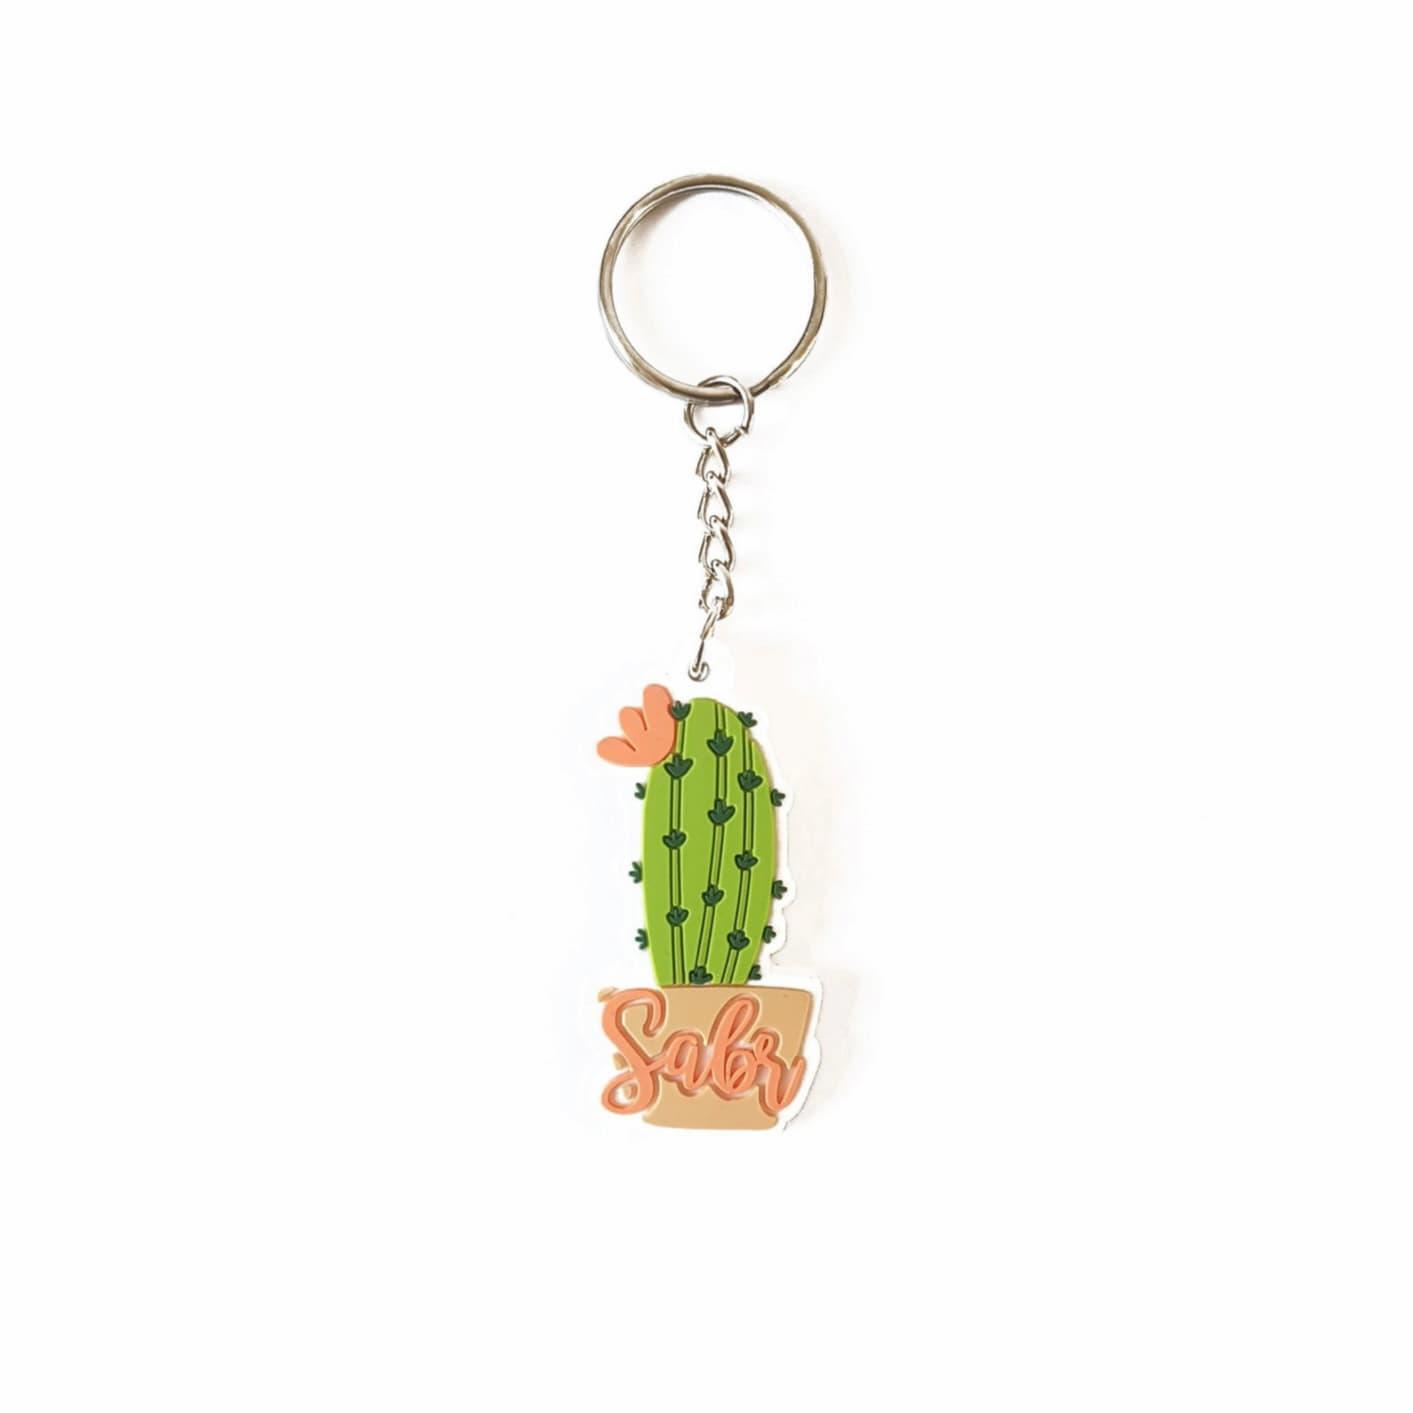 Sabr Kaktus (Schlüsselanhänger) - Mein Gebet